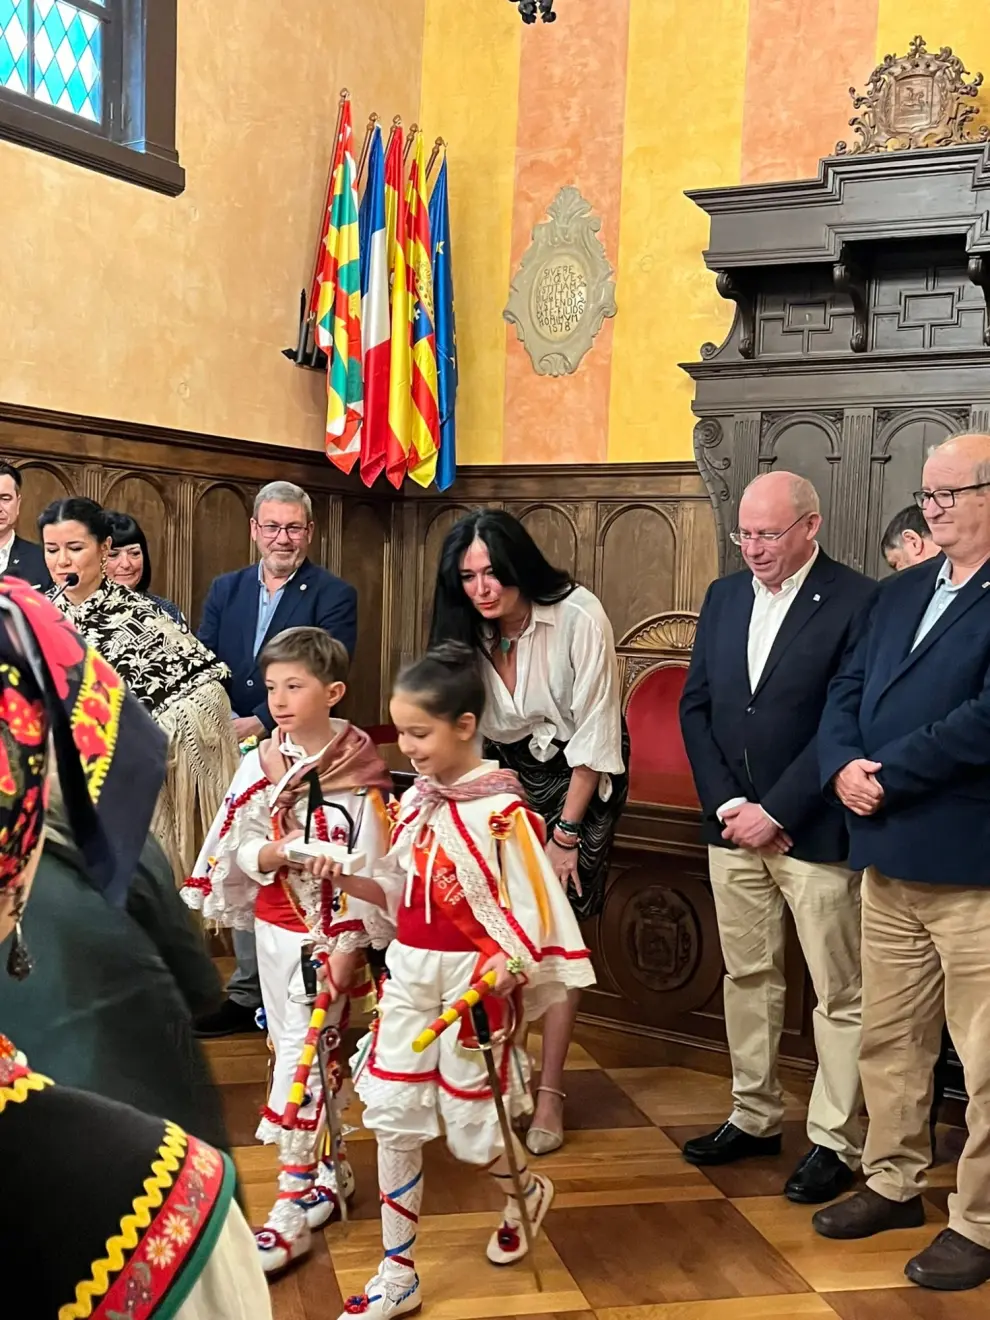 Un centenar de niños y niñas de Huesca, Tardienta, Calahora y Zamora se han dado cita este sábado en la capital altoaragonesa.